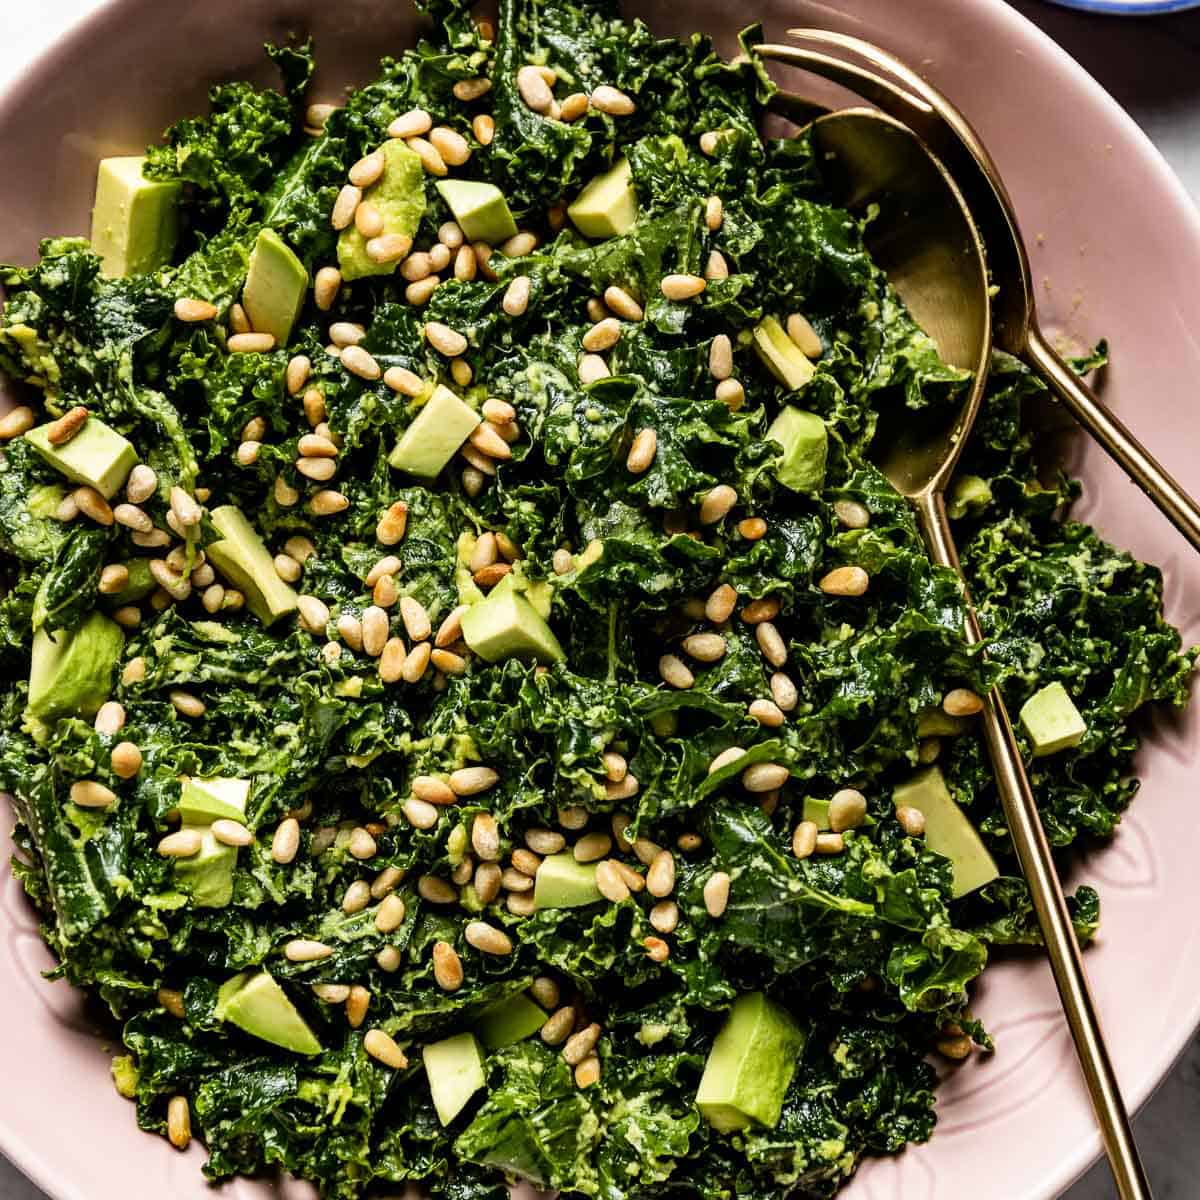 Kale and avocado recipes